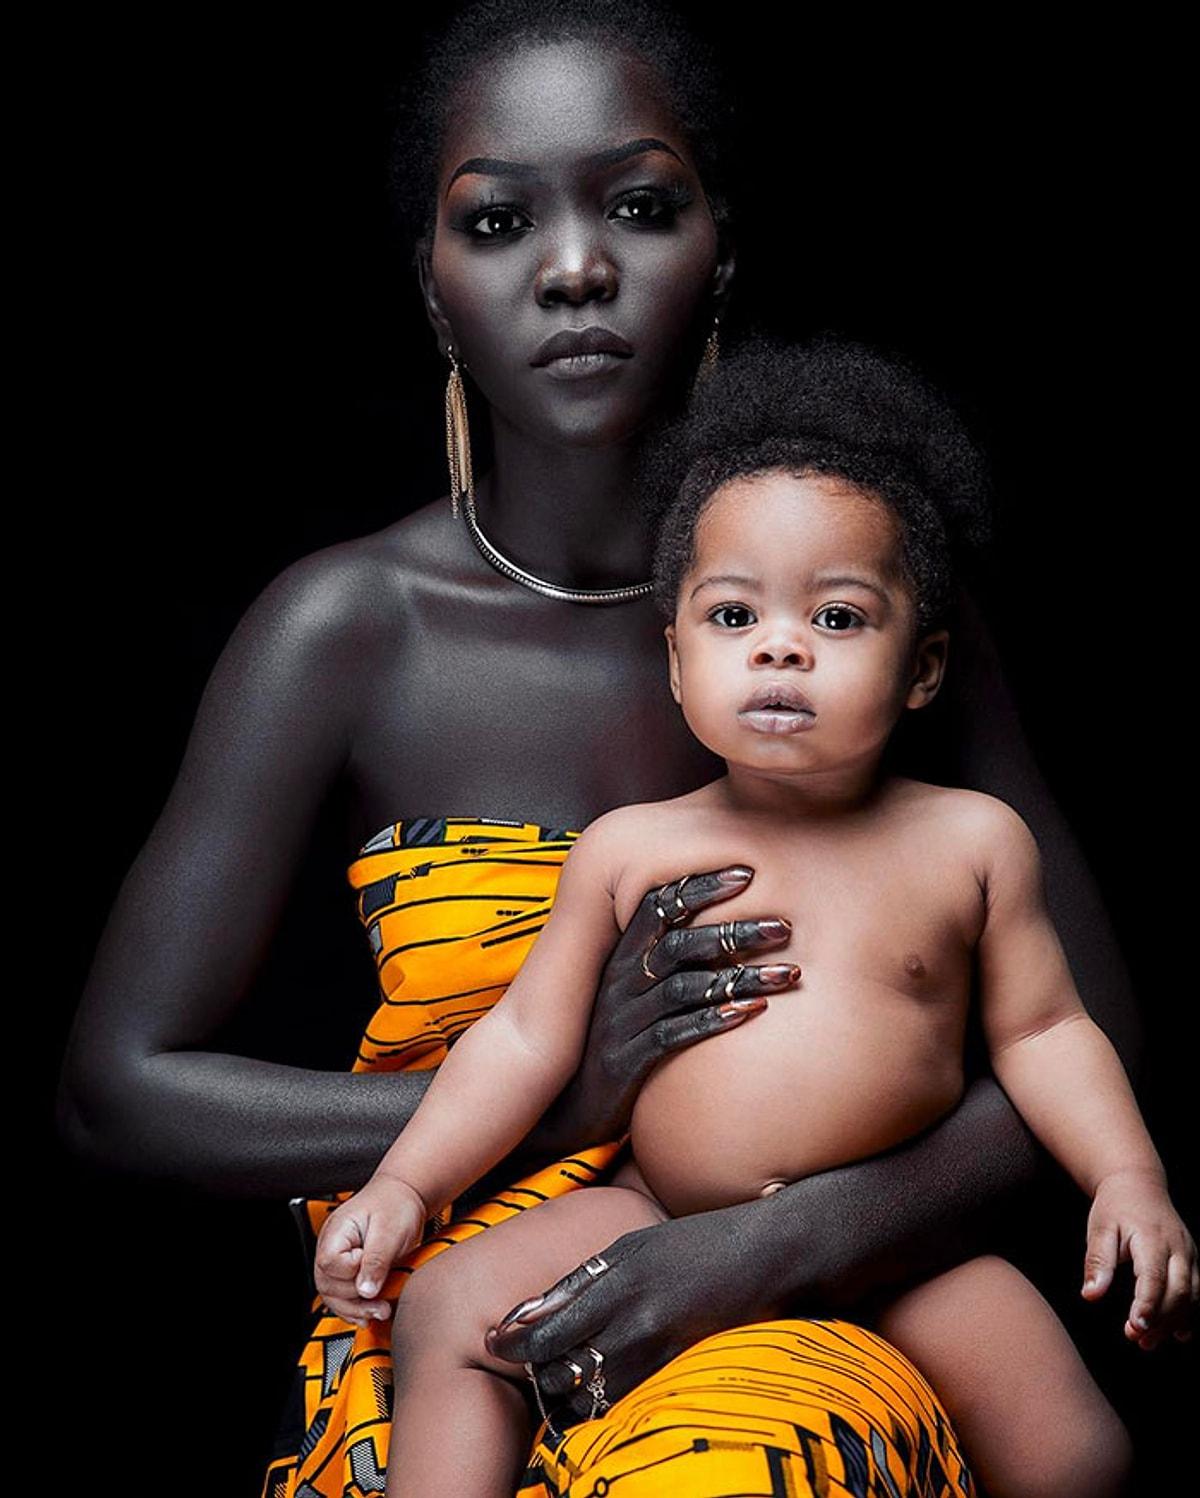 Хочу темнокожую. Нуаким Гатвеч. Королева тьмы модель из Южного Судана Ньяким. Ньяким Гатвеч модель. Королева тьмы - Ньяким Гатвех - модель из Южного Судана.